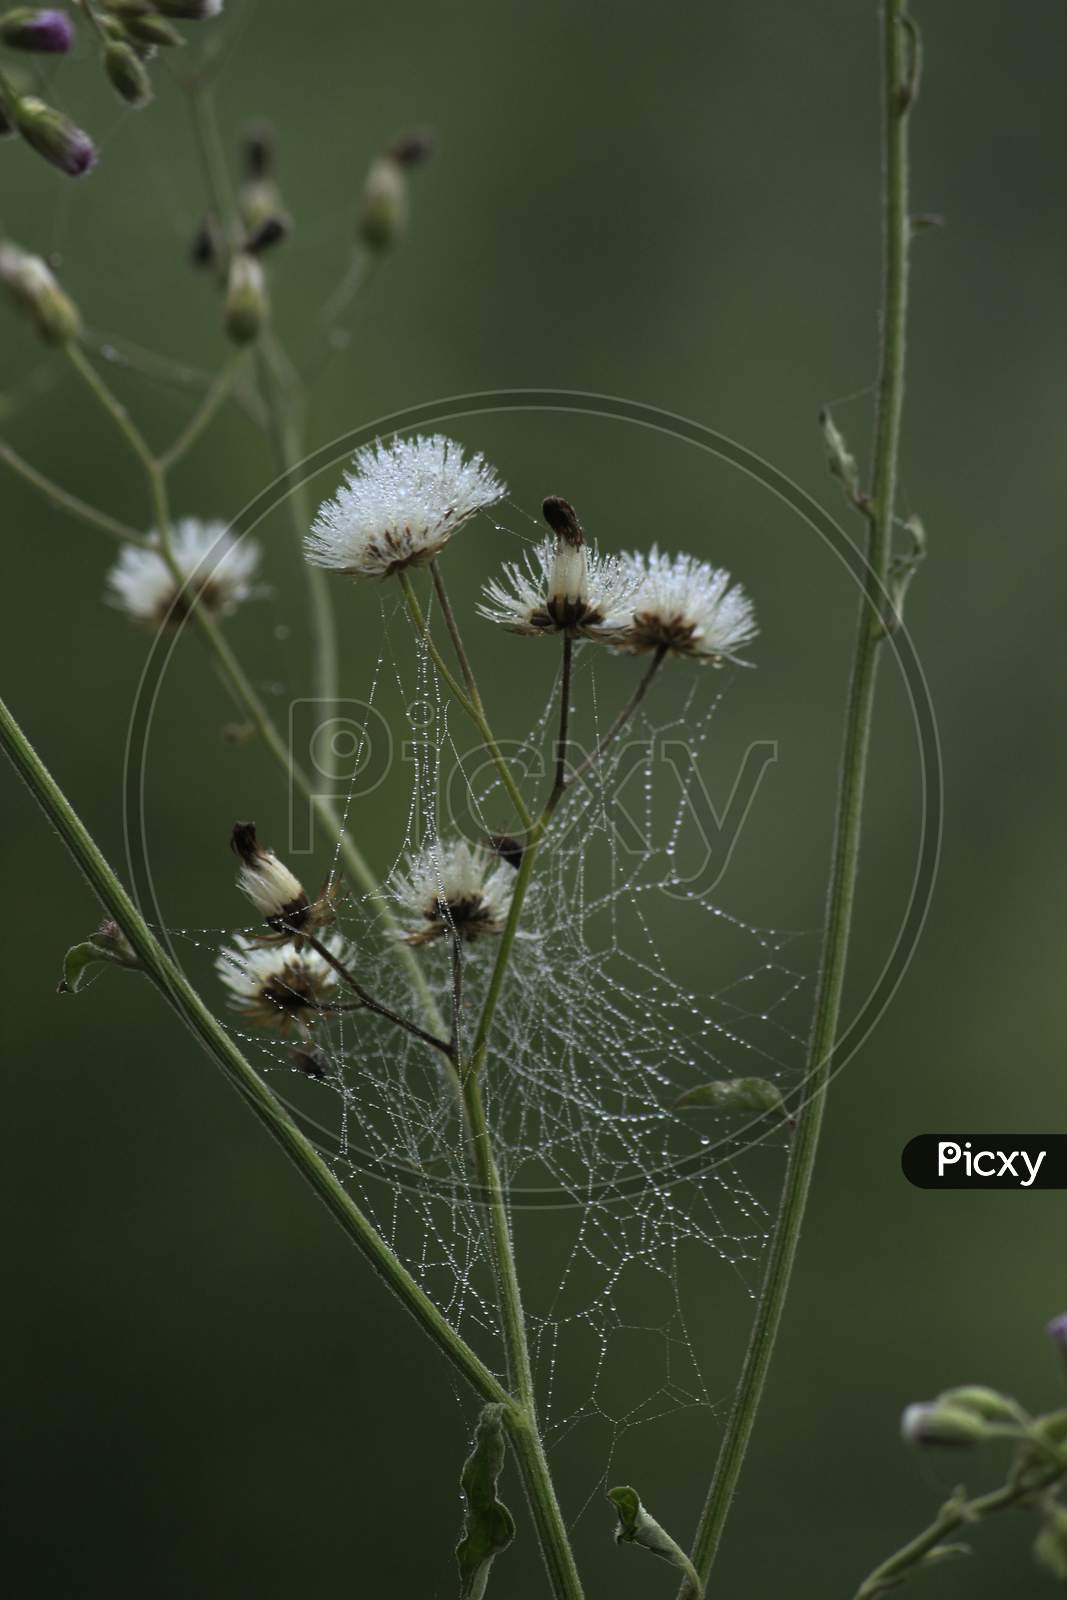 Cyanthilium Cinereum Flower Cover With Spider Web